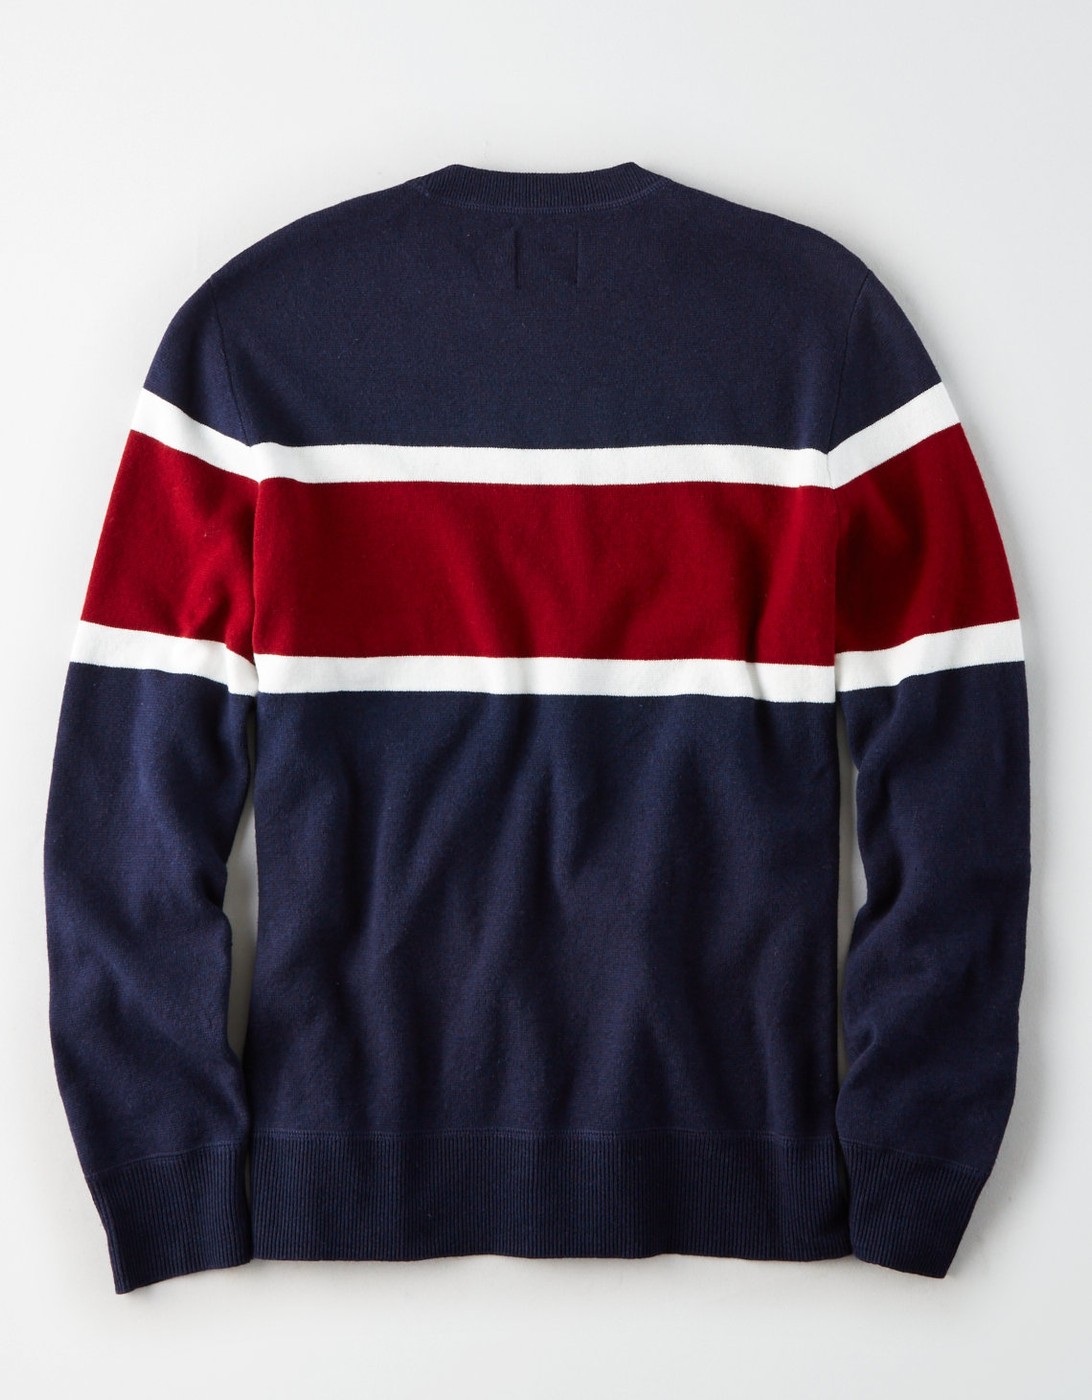 Свитер мужской - свитер American Eagle, L, L